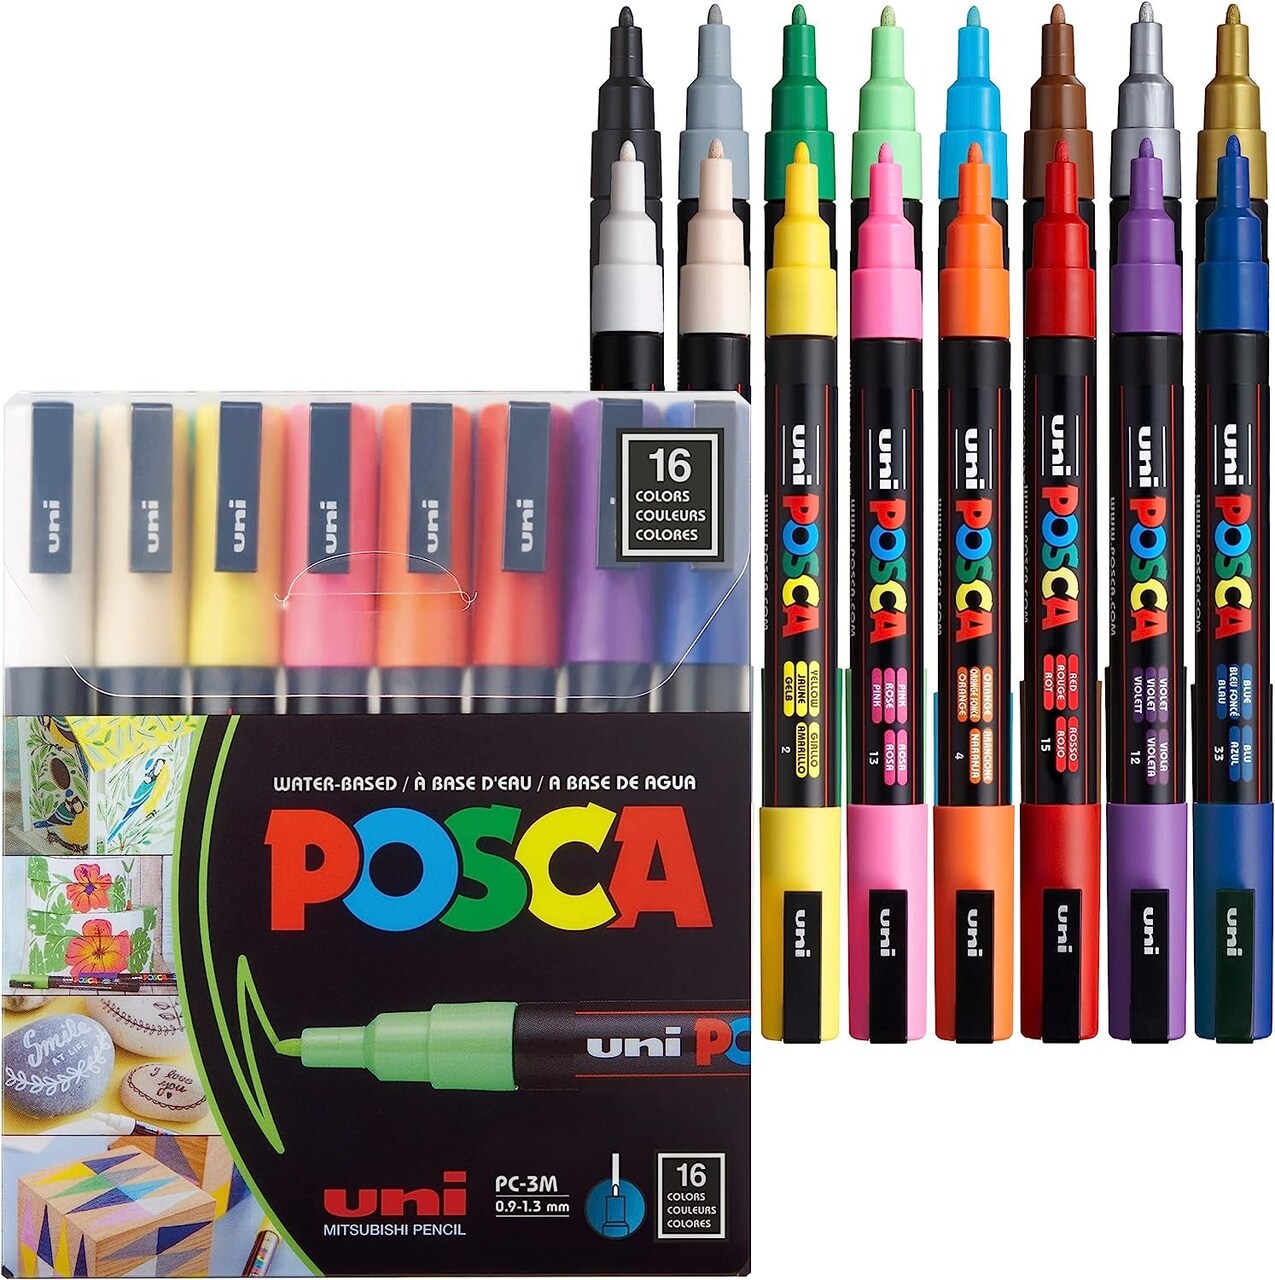 16 Markers 3M, Pens for Art Supplies, School Supplies, Rock Art